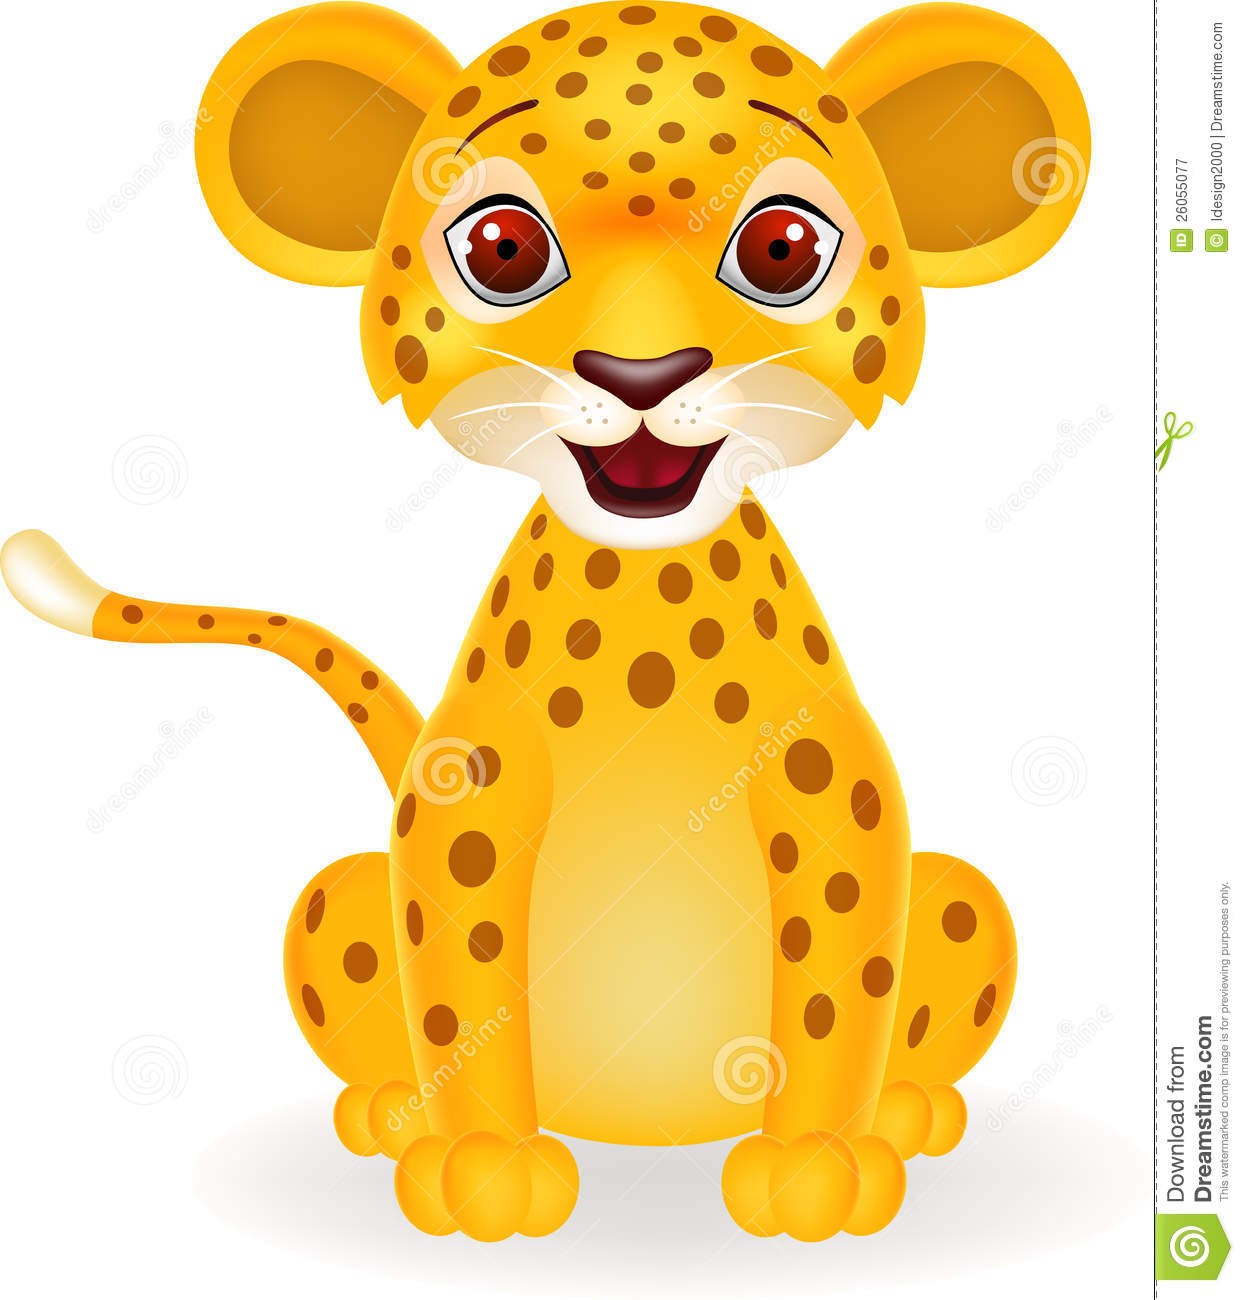 Funny cheetah smiling.